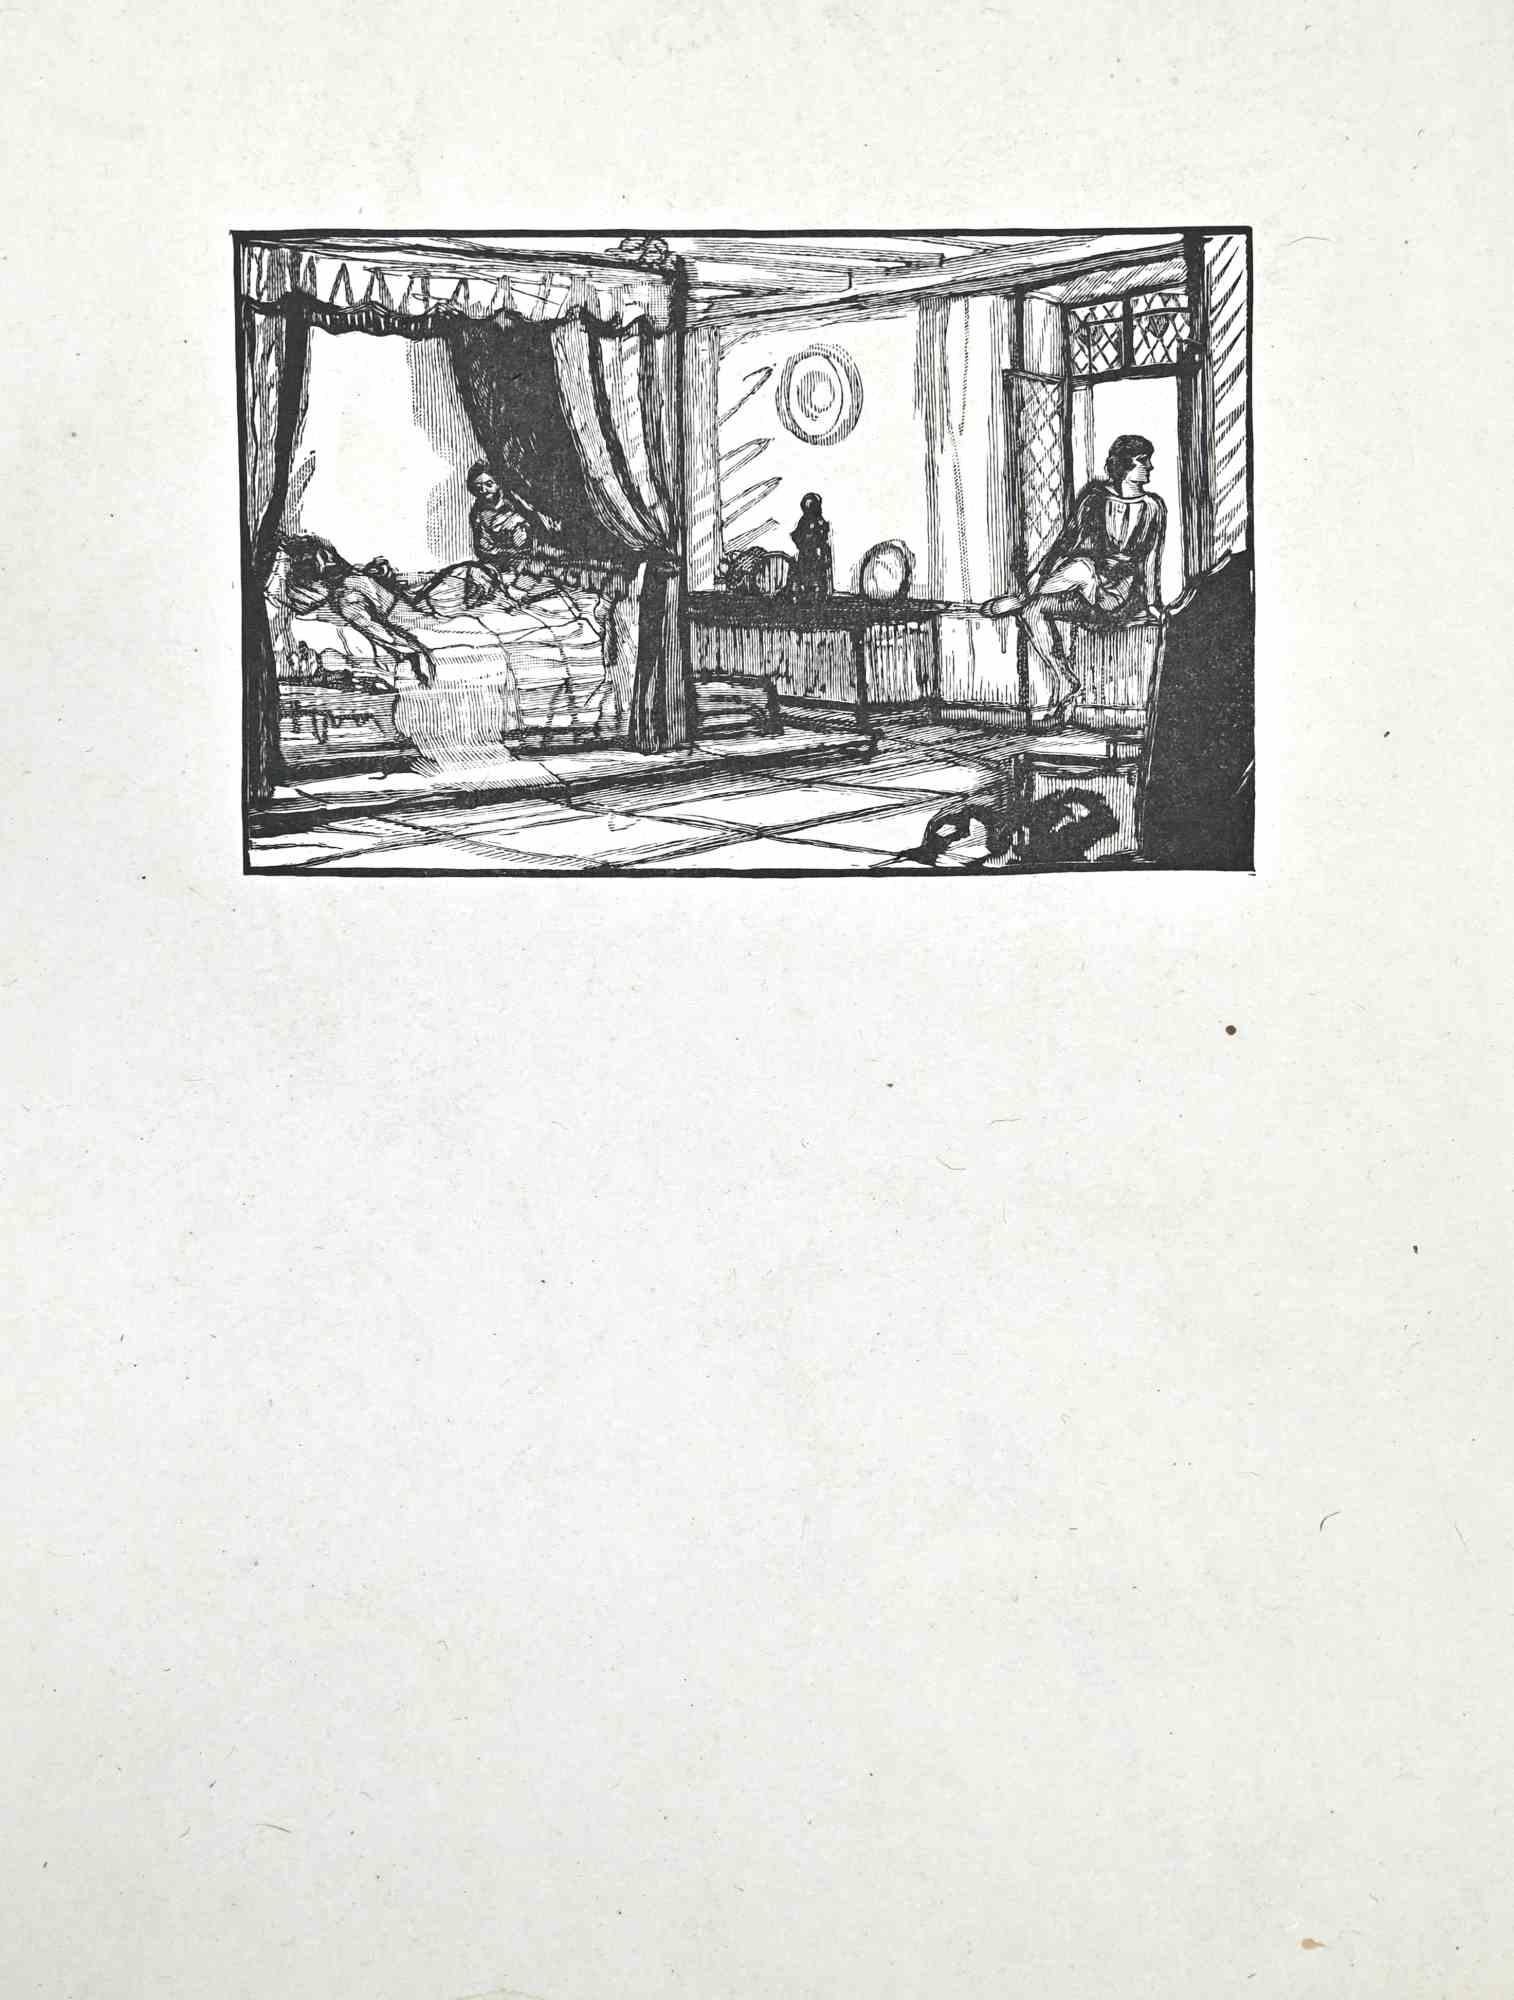 Aristokratischer Morgen ist ein Holzschnitt auf elfenbeinfarbenem Papier, der von Paul Baudier (1881-1962) in den 1930er Jahren realisiert wurde.

Gute Bedingungen.

Paul Baudier, (geboren am 18. Oktober 1881 in Paris und gestorben am 9. Dezember